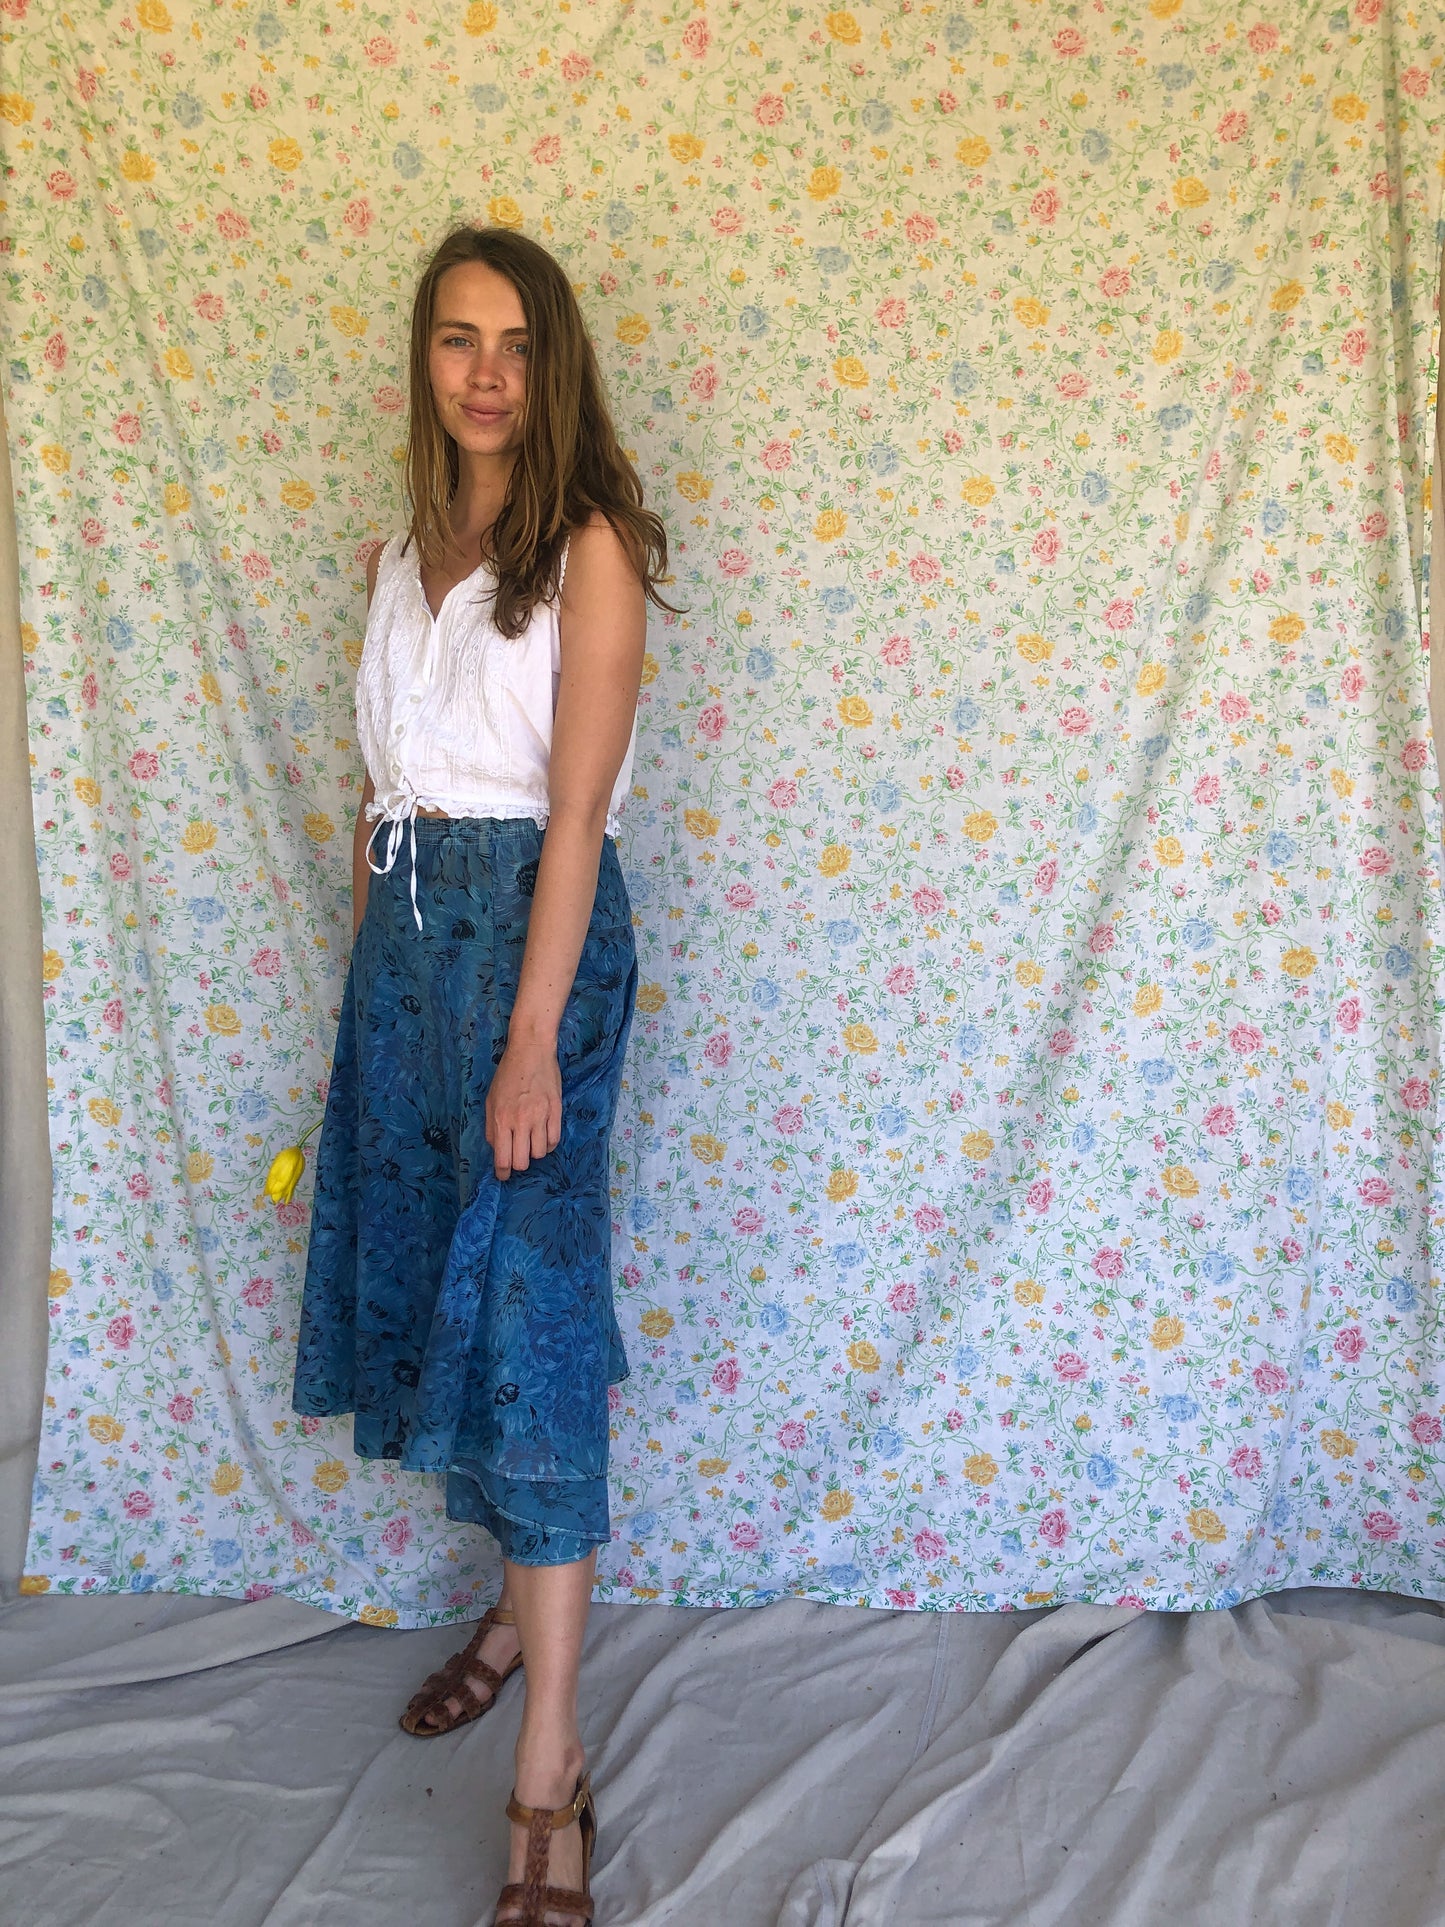 Indigo Floral Print Skirt